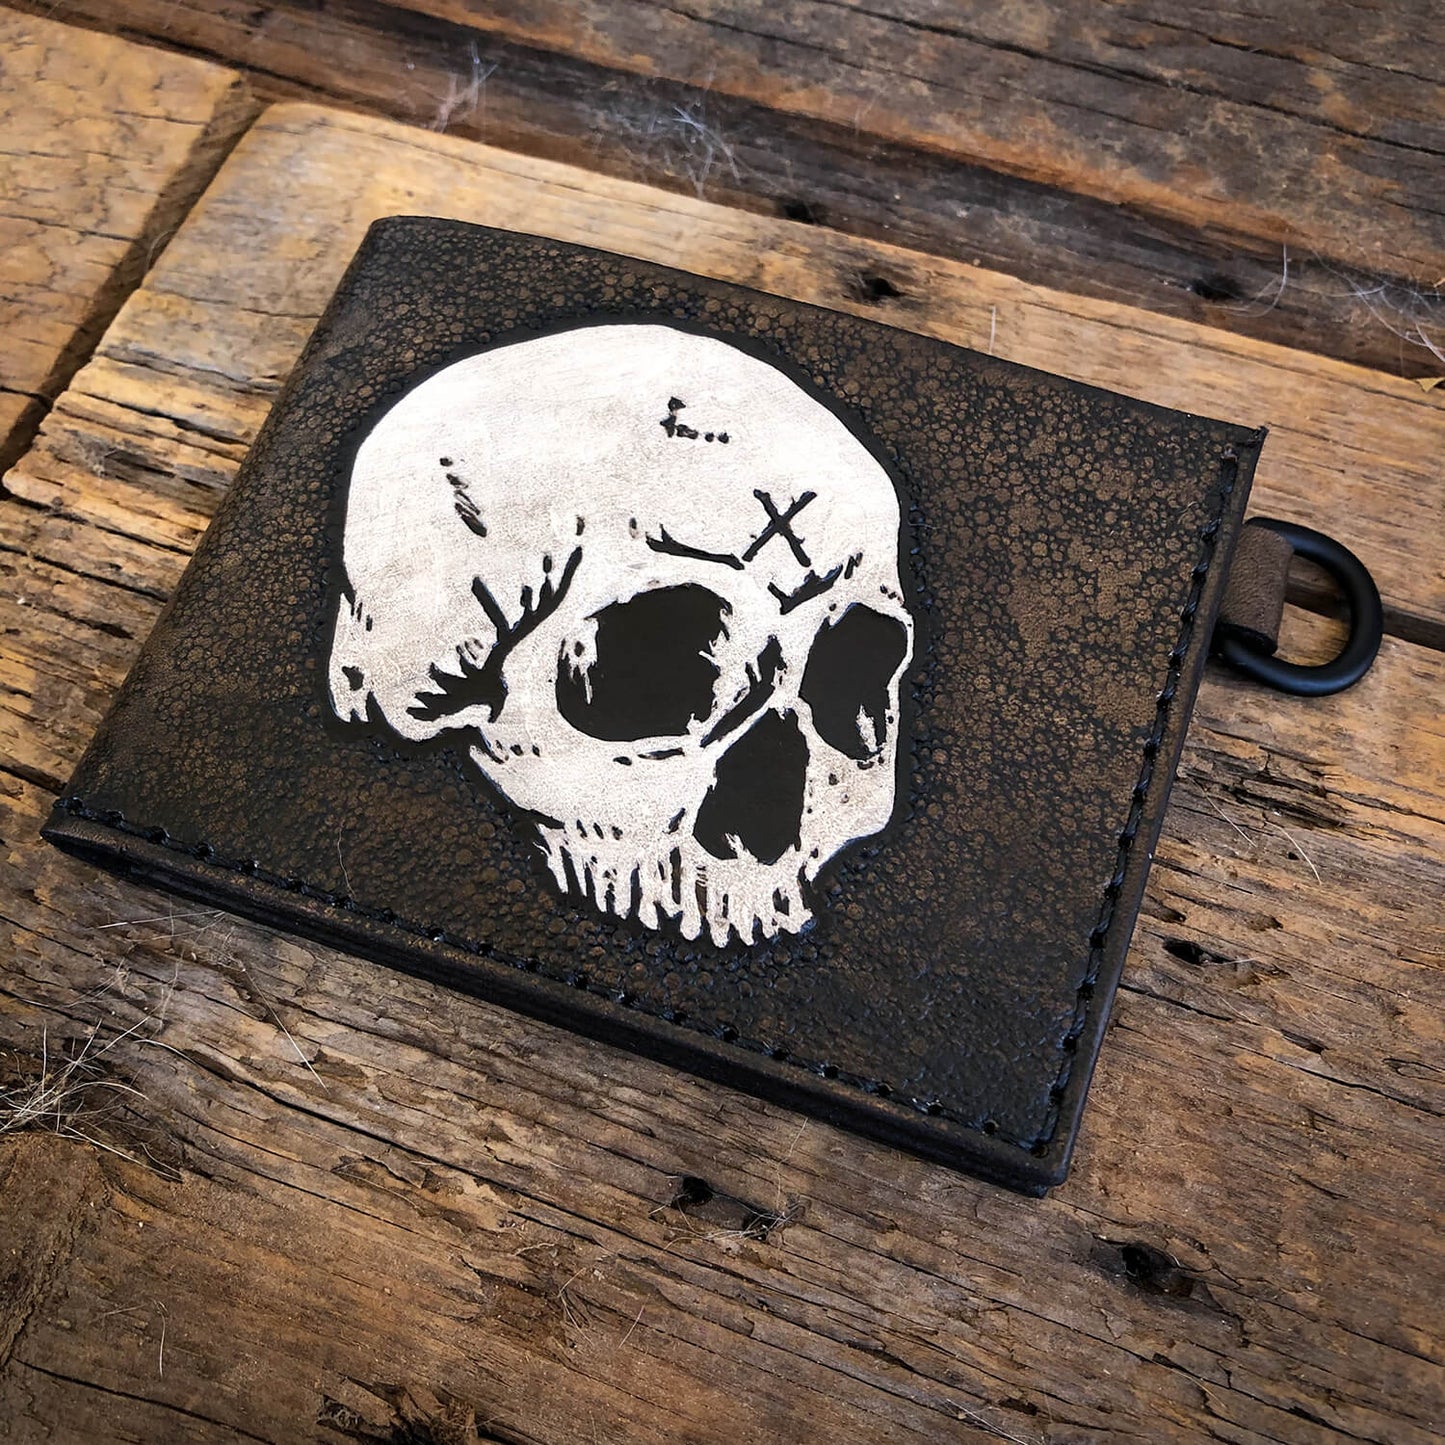 Skull Wallet